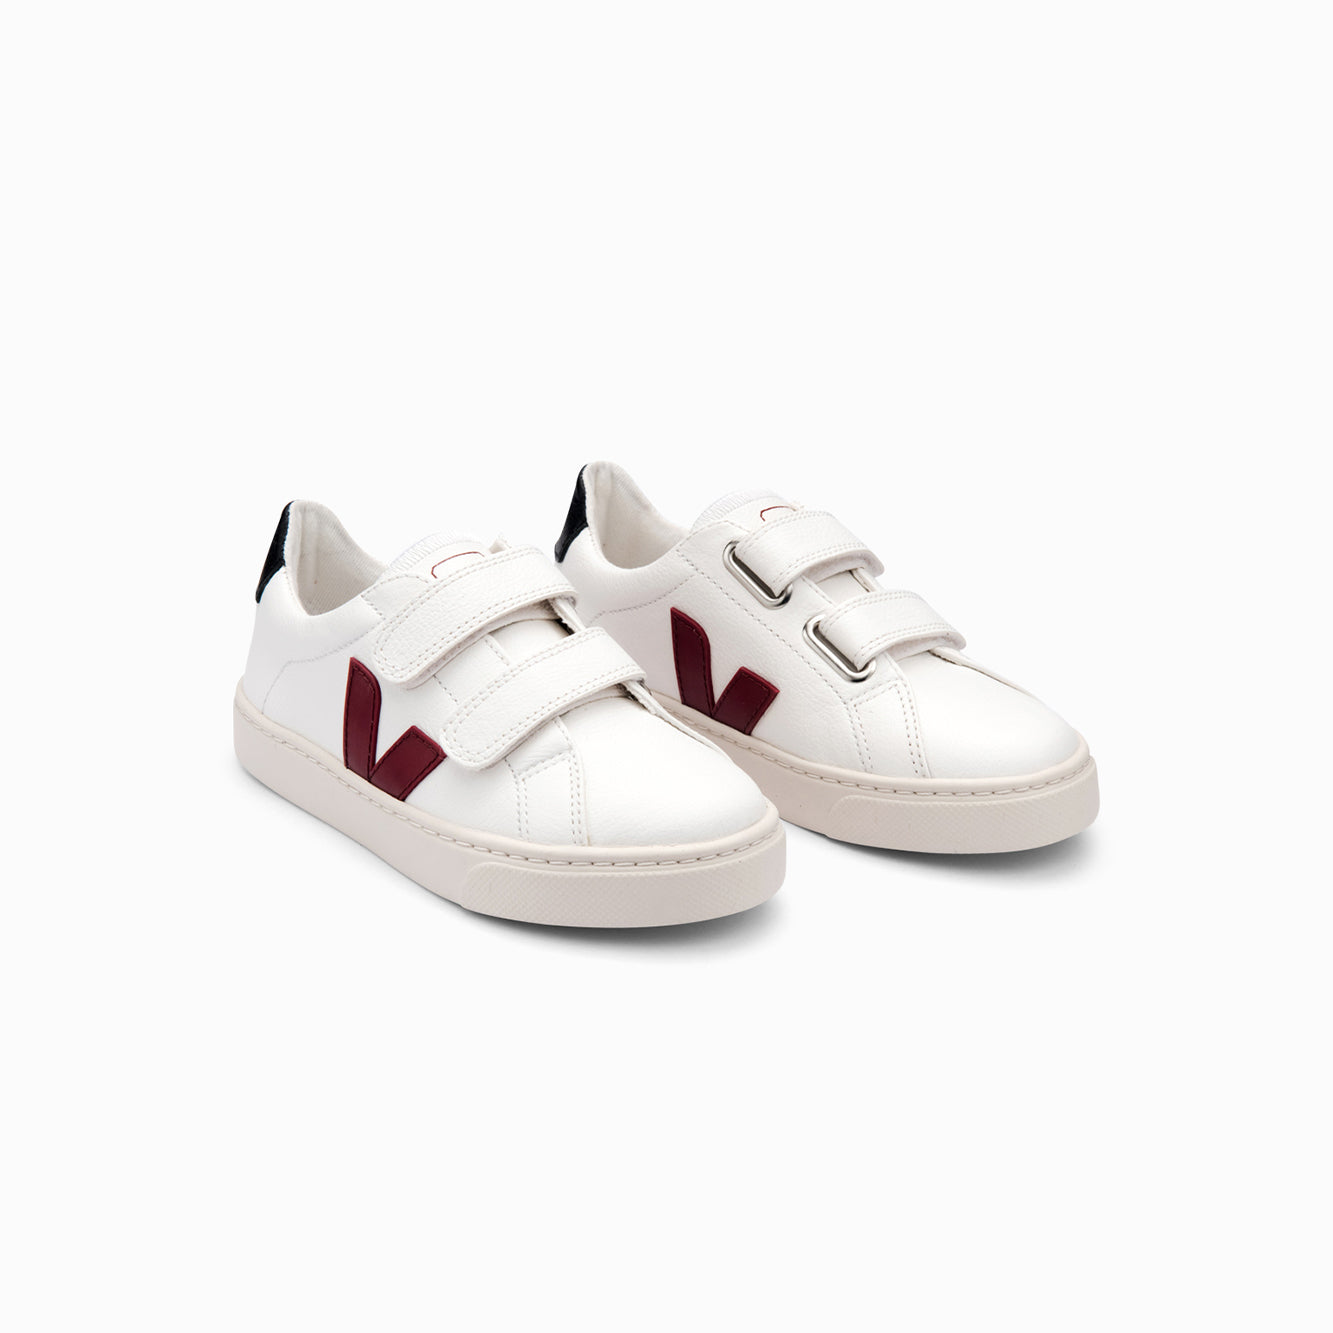 Boys & Girls White "ESPLAR CHROMEFREE" Shoes